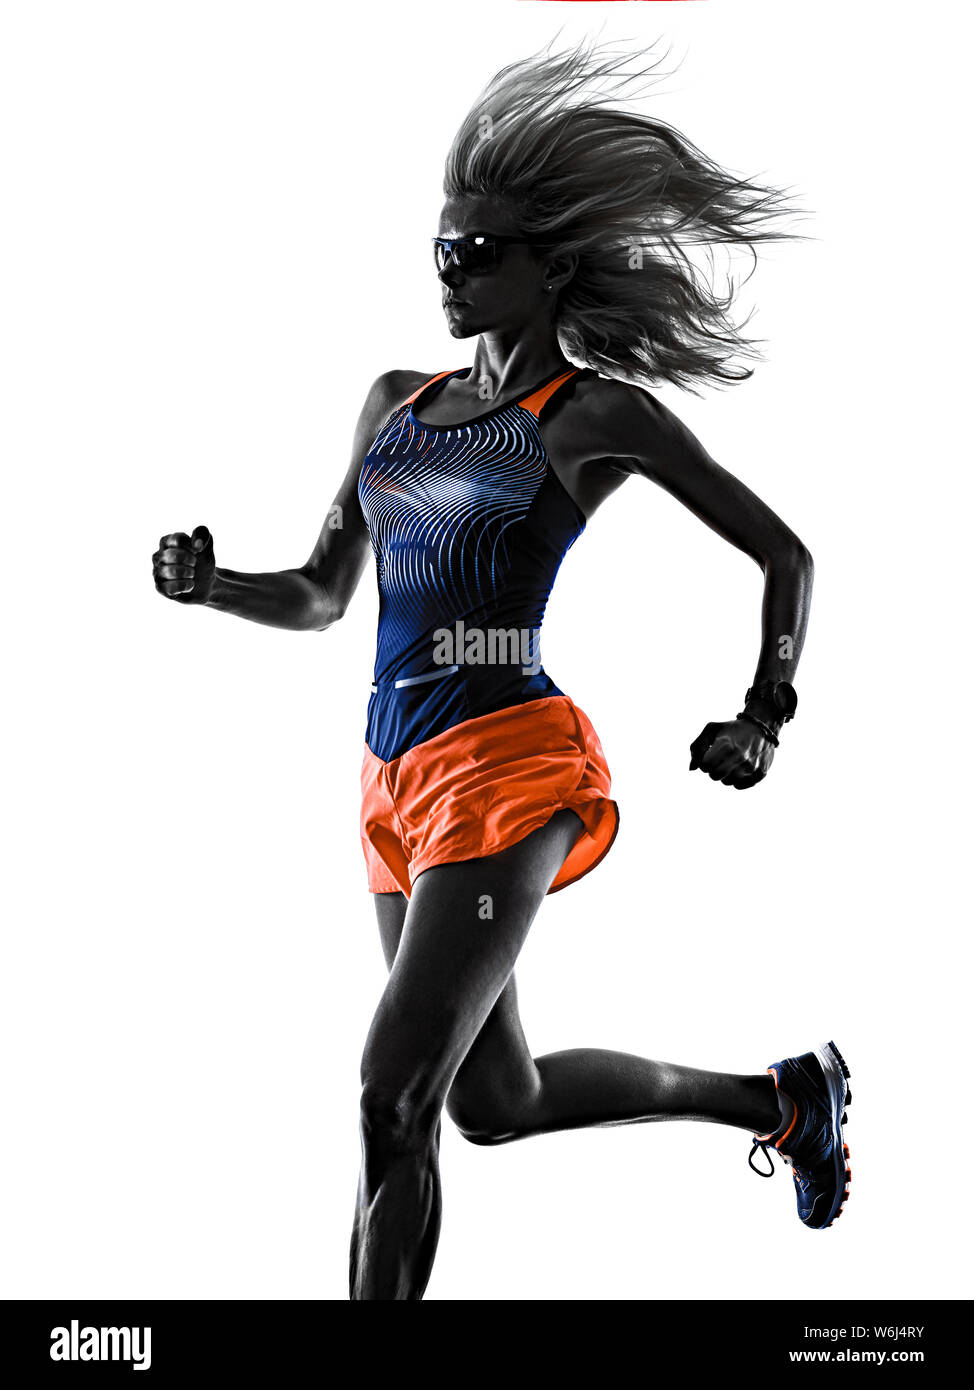 Une belle race blanche longue chevelure blonde woman runner jogger running jogging studio shot isolé sur fond blanc Banque D'Images